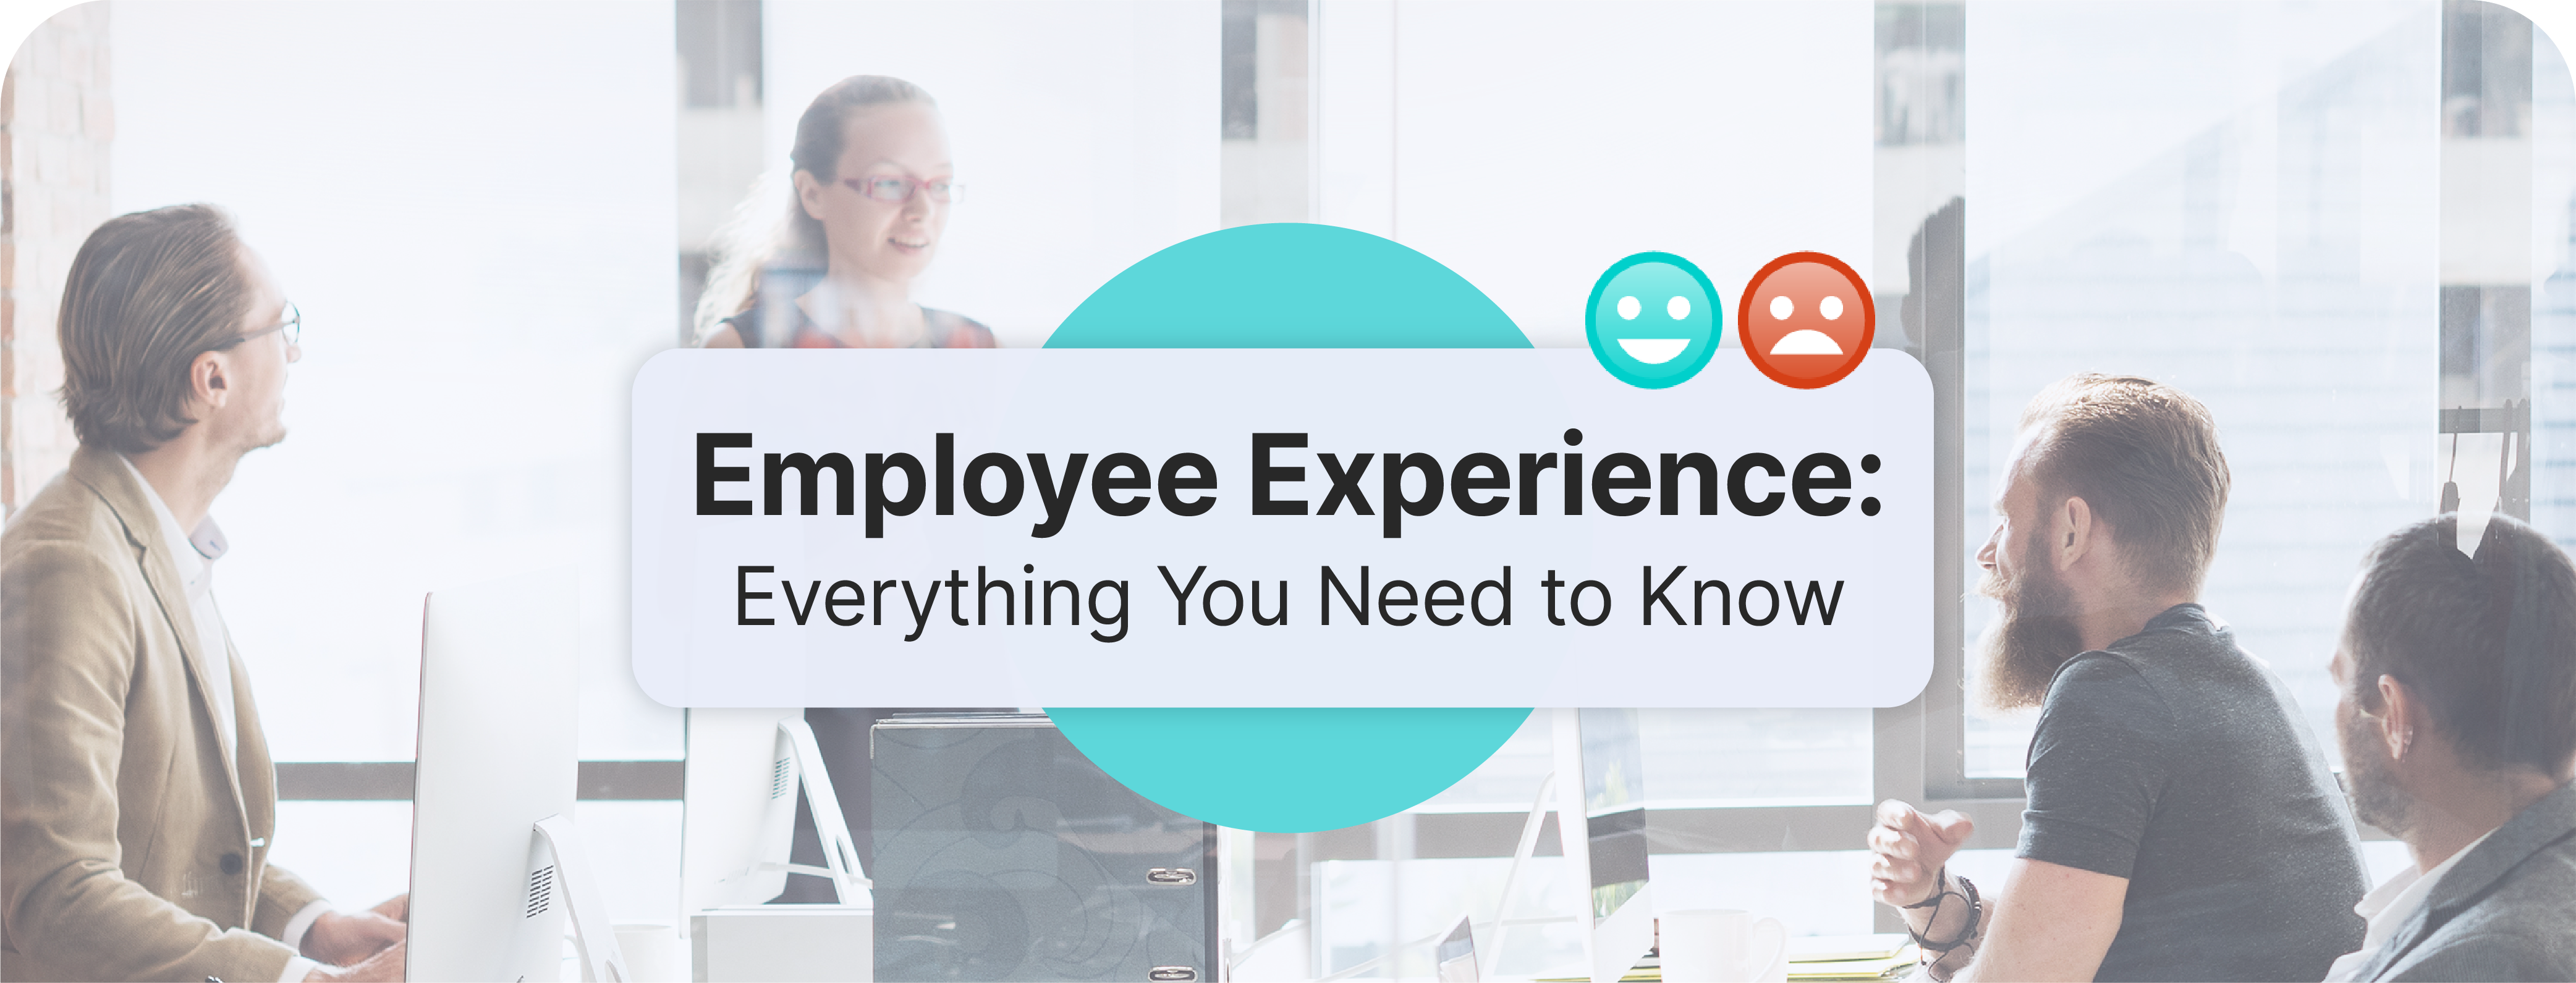 أوراق بيضاء عن الموارد البشرية - Employee Experience: Everything You Need to Know